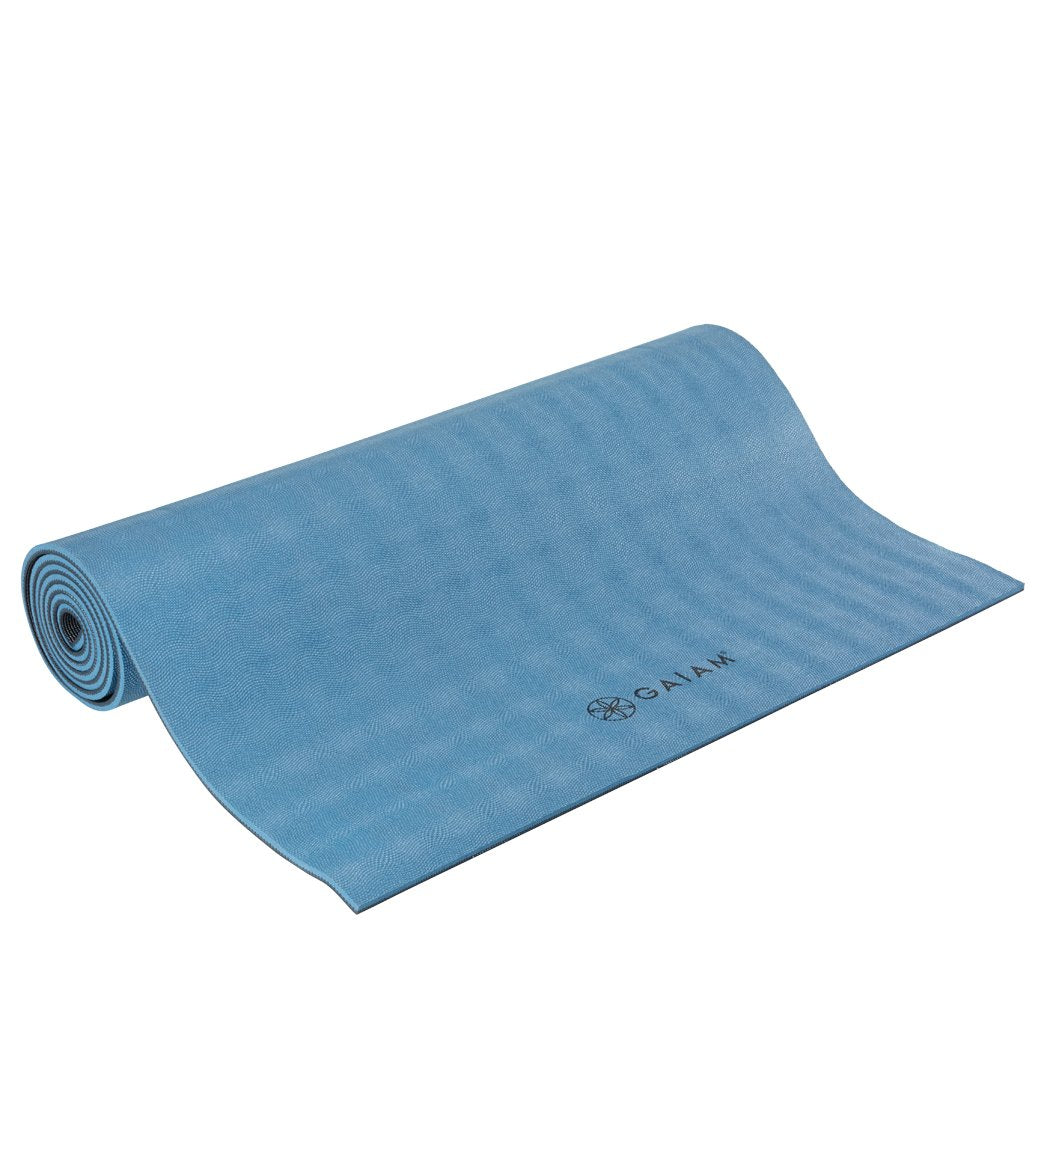 GAIAM 6 mm Premium Reversible Yoga Mat - Yoga mat